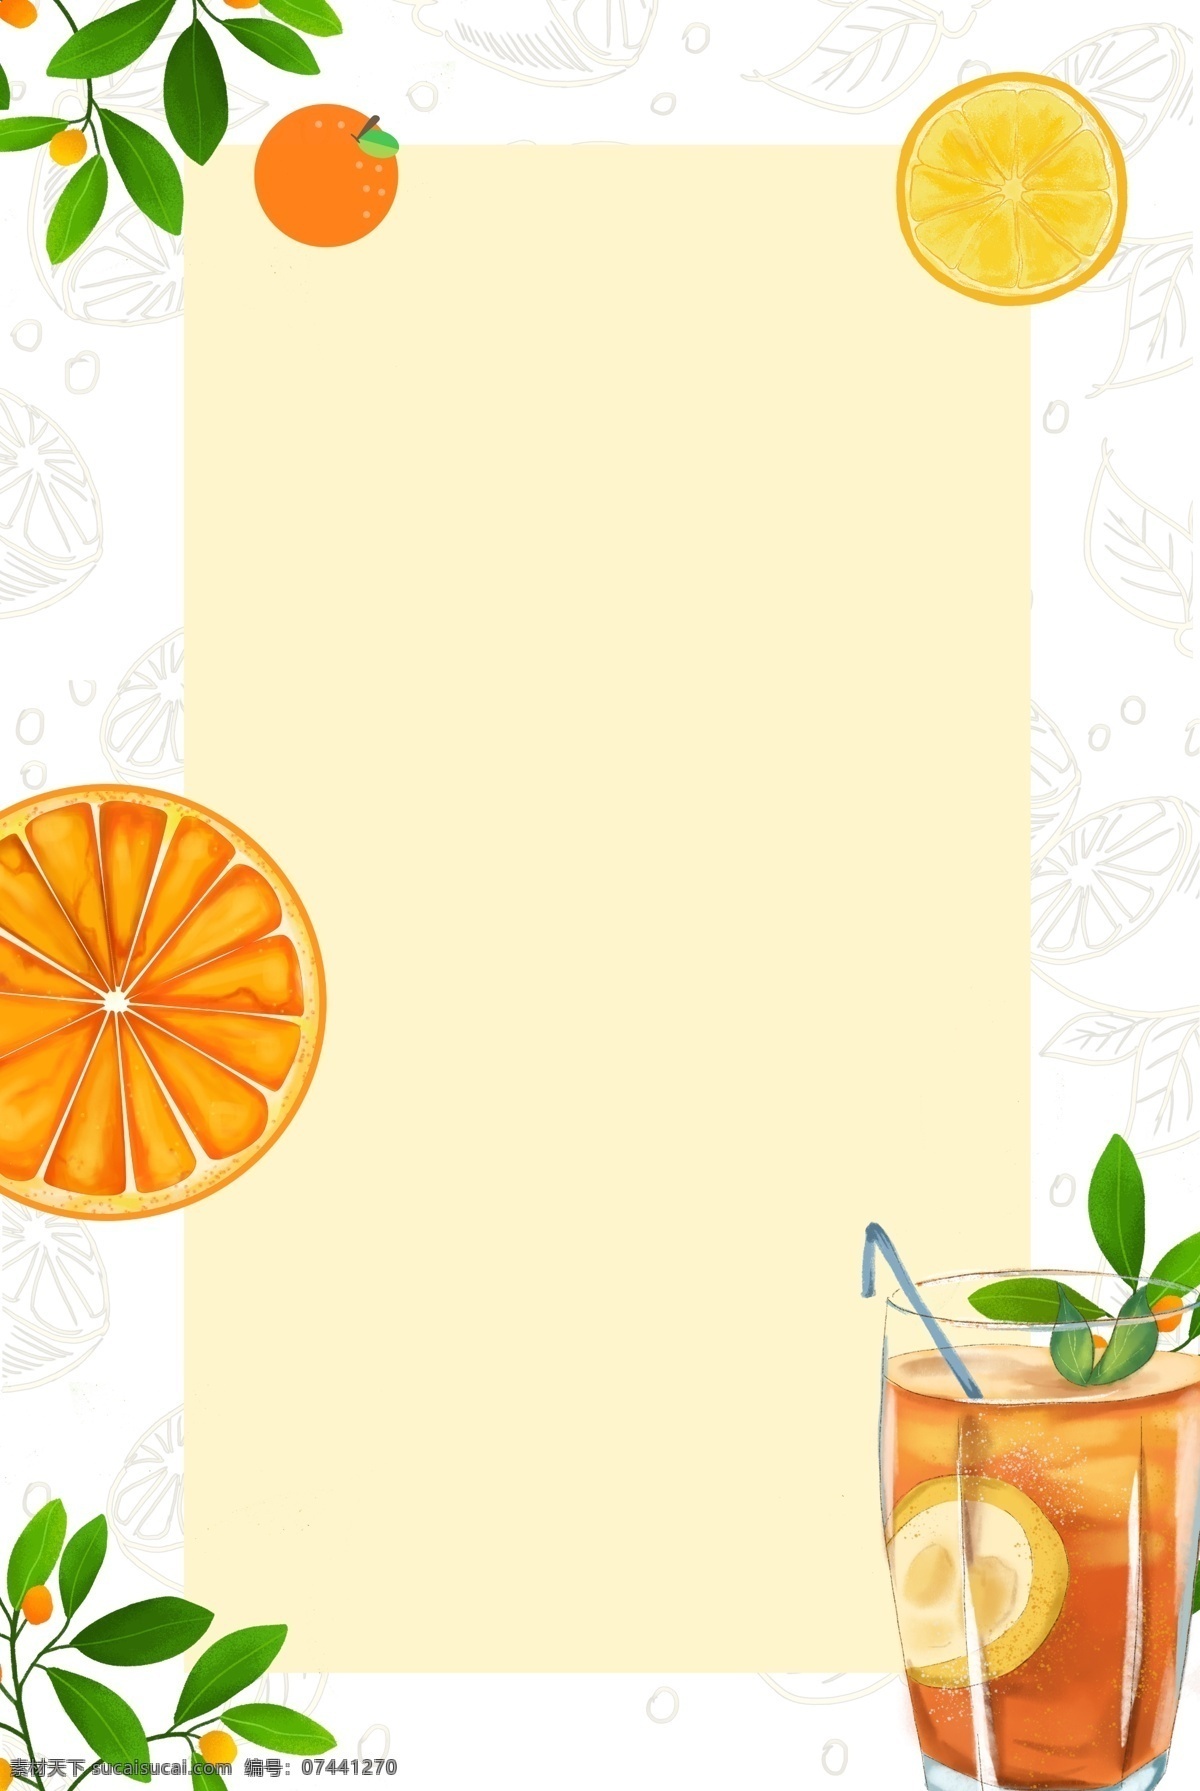 夏日 降温 橙子 底纹 背景 降暑 橙色 方框 树叶 卡通 简约